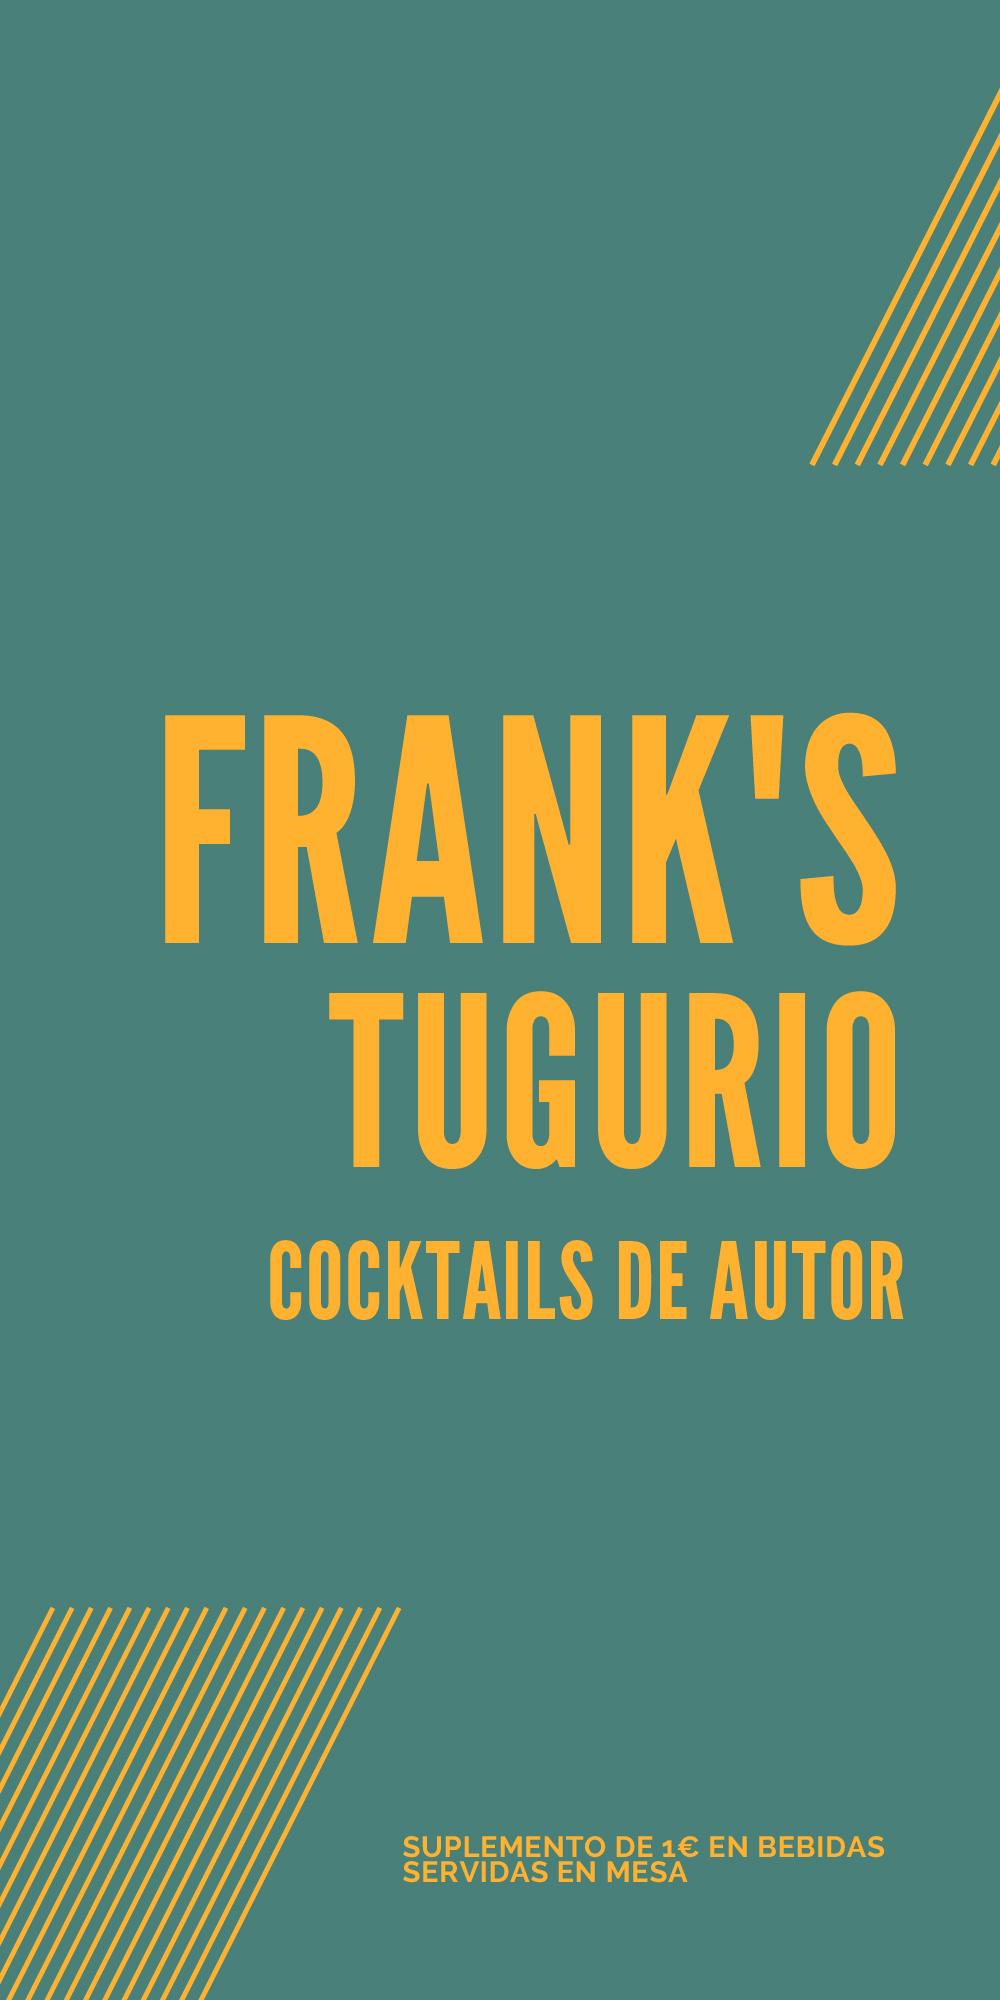 Carta Cocktails Franks Tugurio